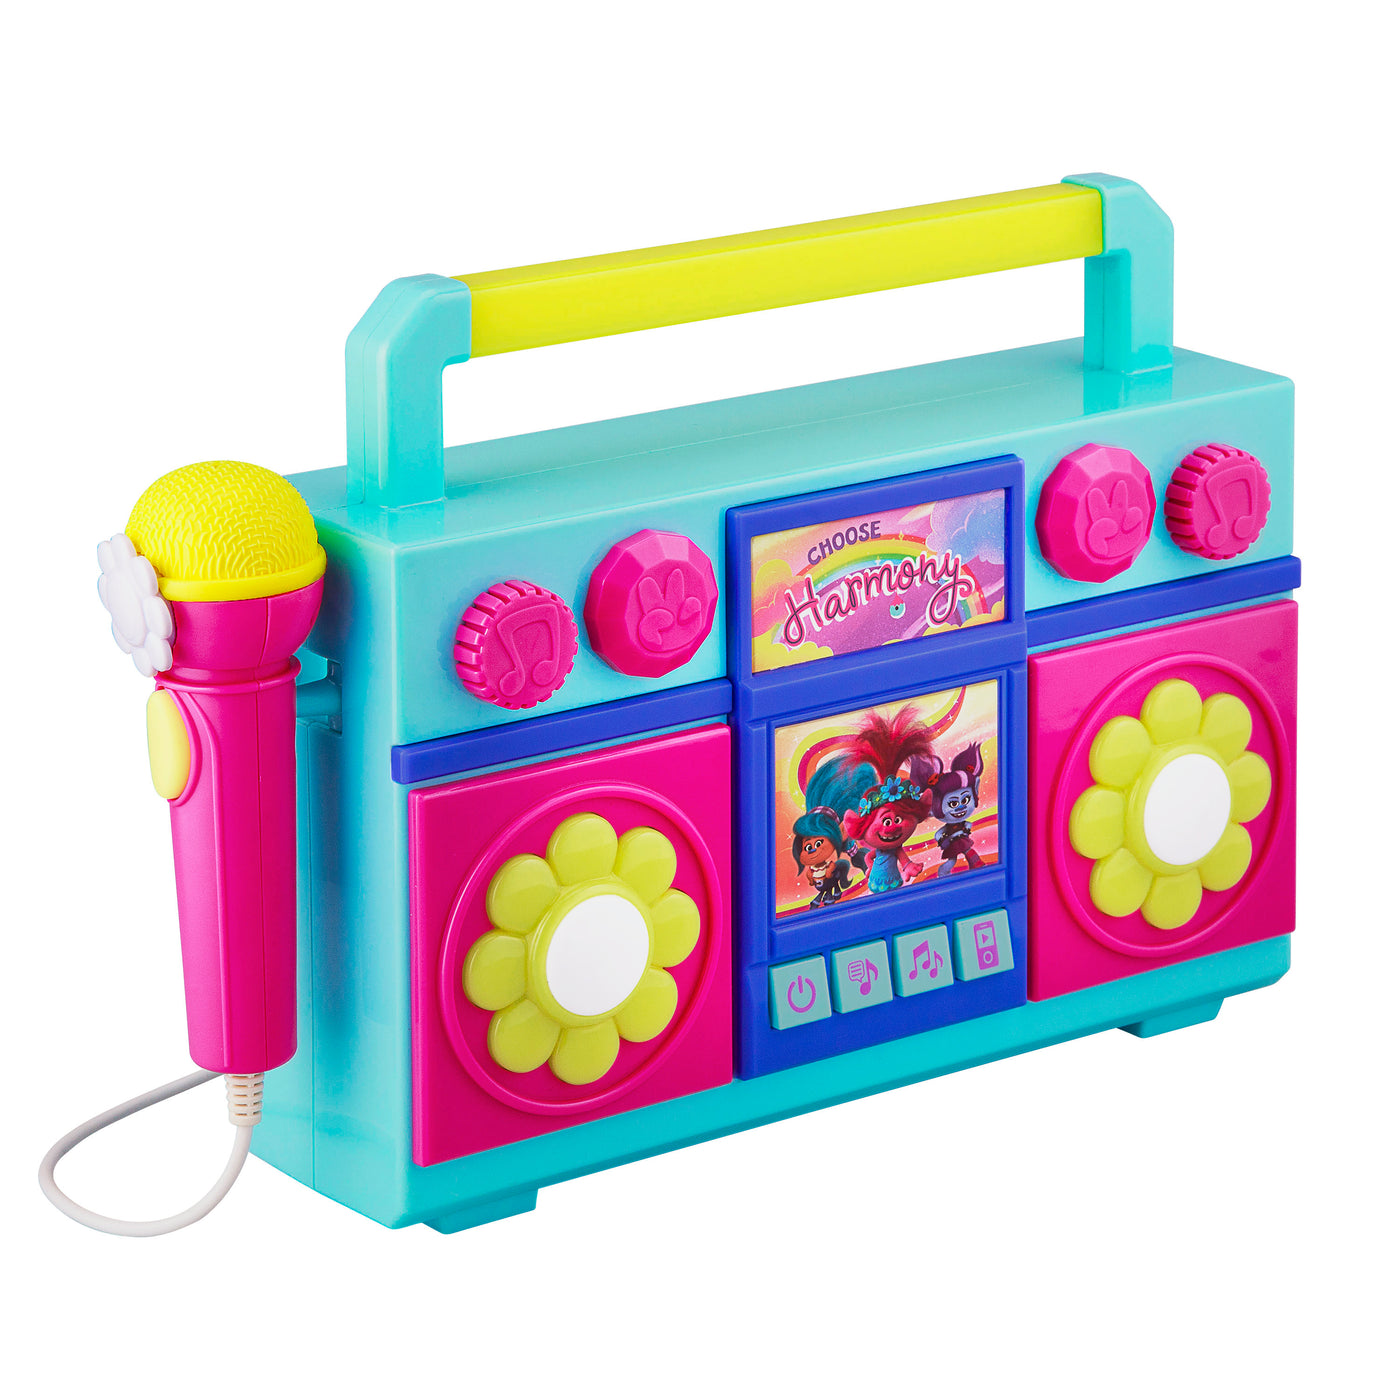 Trolls Karaoke Boombox Toy for Kids